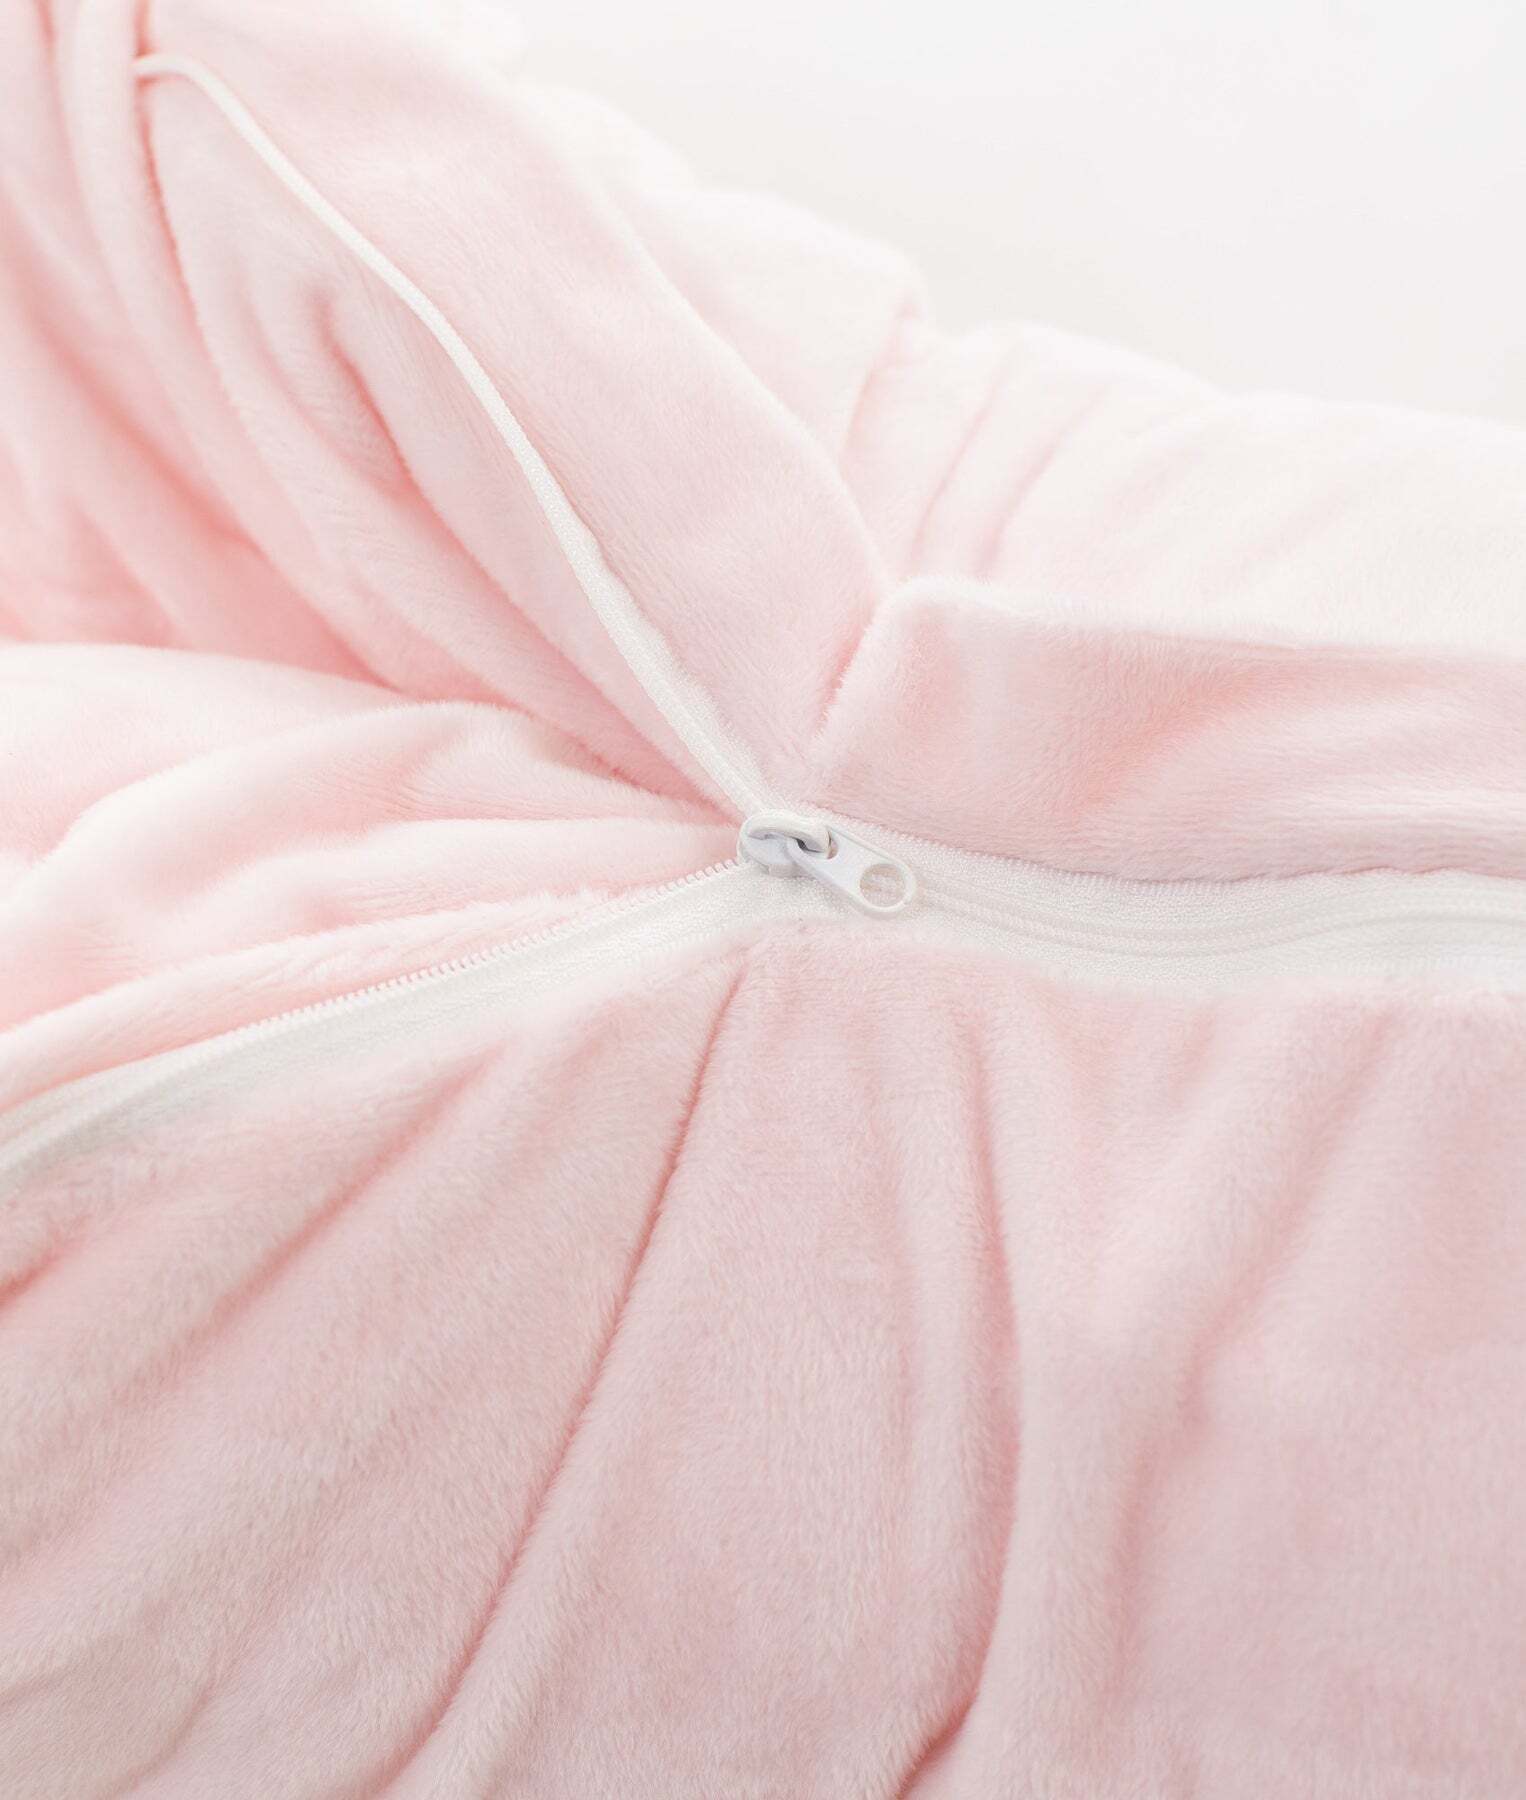 nursing-lounge-pillow-pink-581_1800x1800